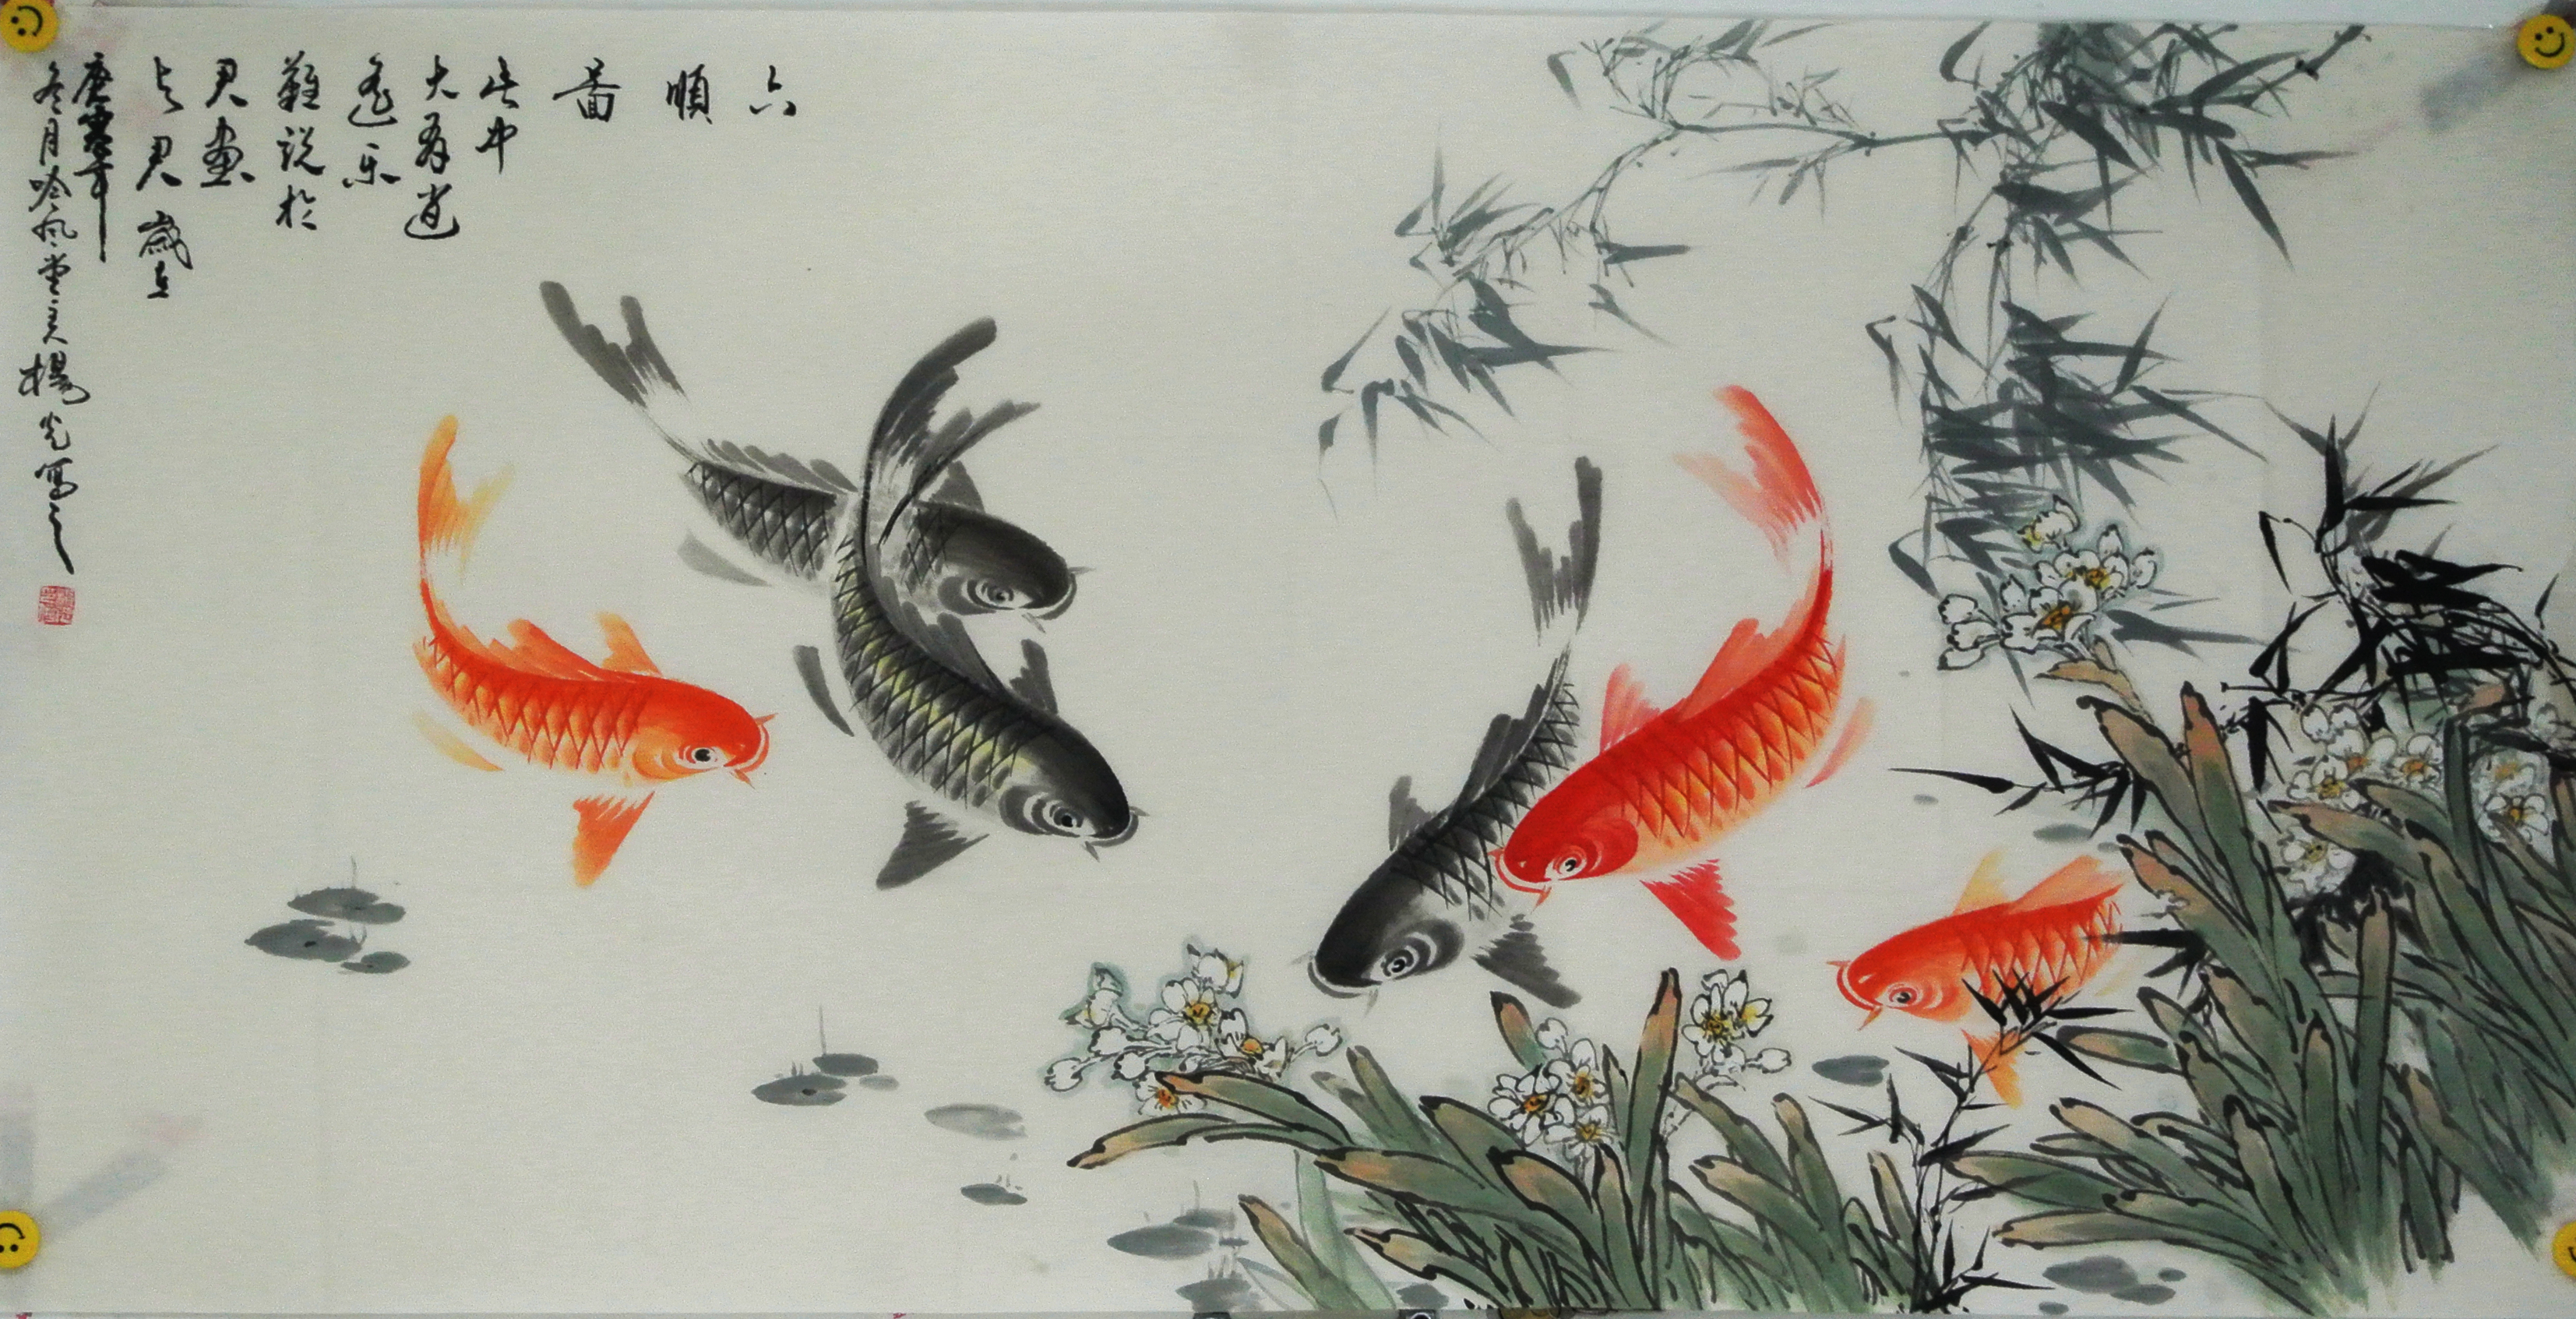 国画九鱼图系列作品欣赏  画面中又红色鲤鱼,因红色